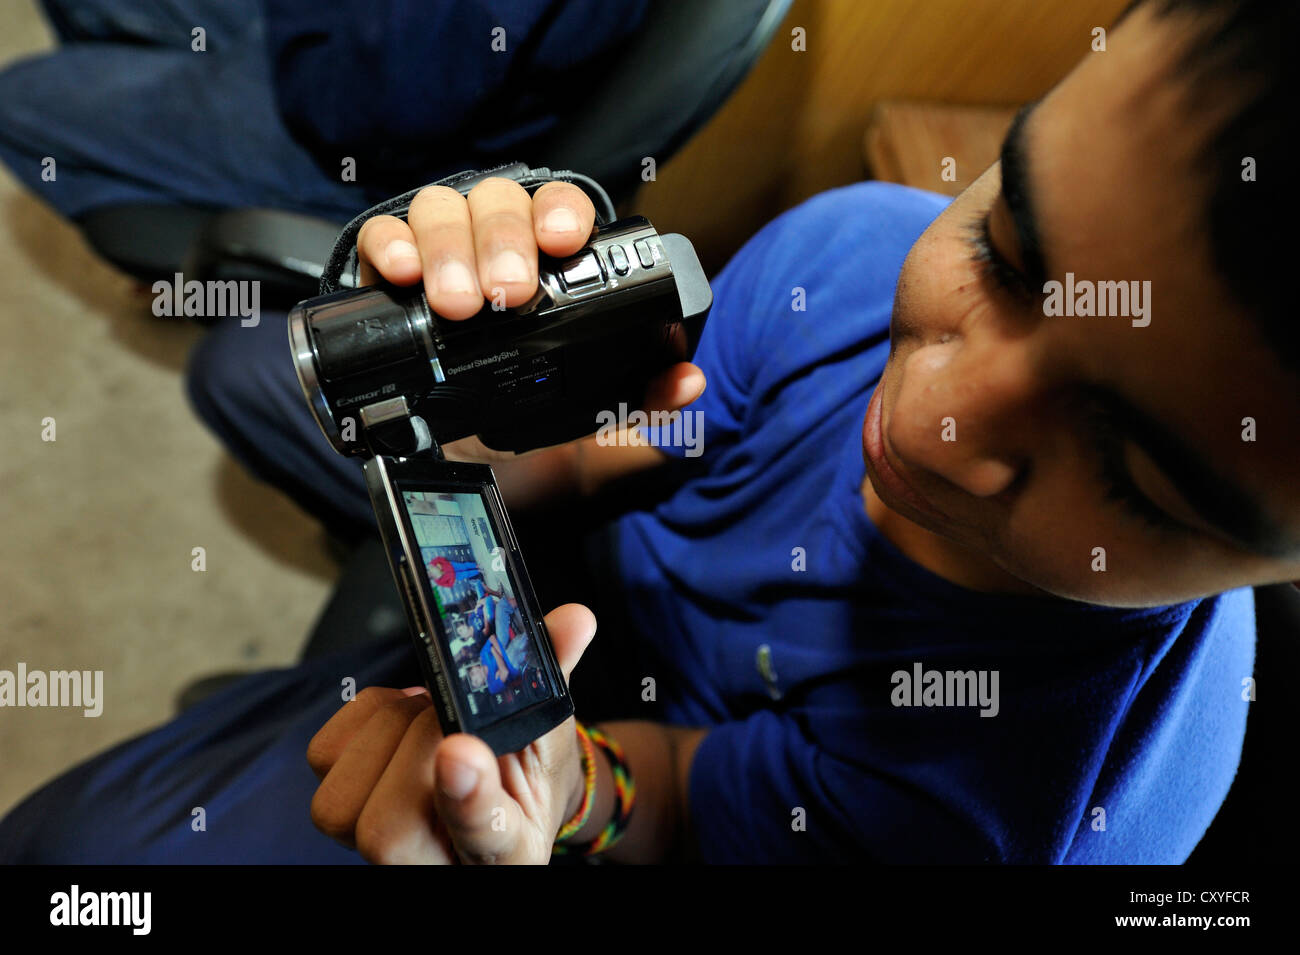 Cours vidéo pour les jeunes, participant est tenant une caméra vidéo dans ses mains pour la première fois, l'organisation 'El Banque D'Images